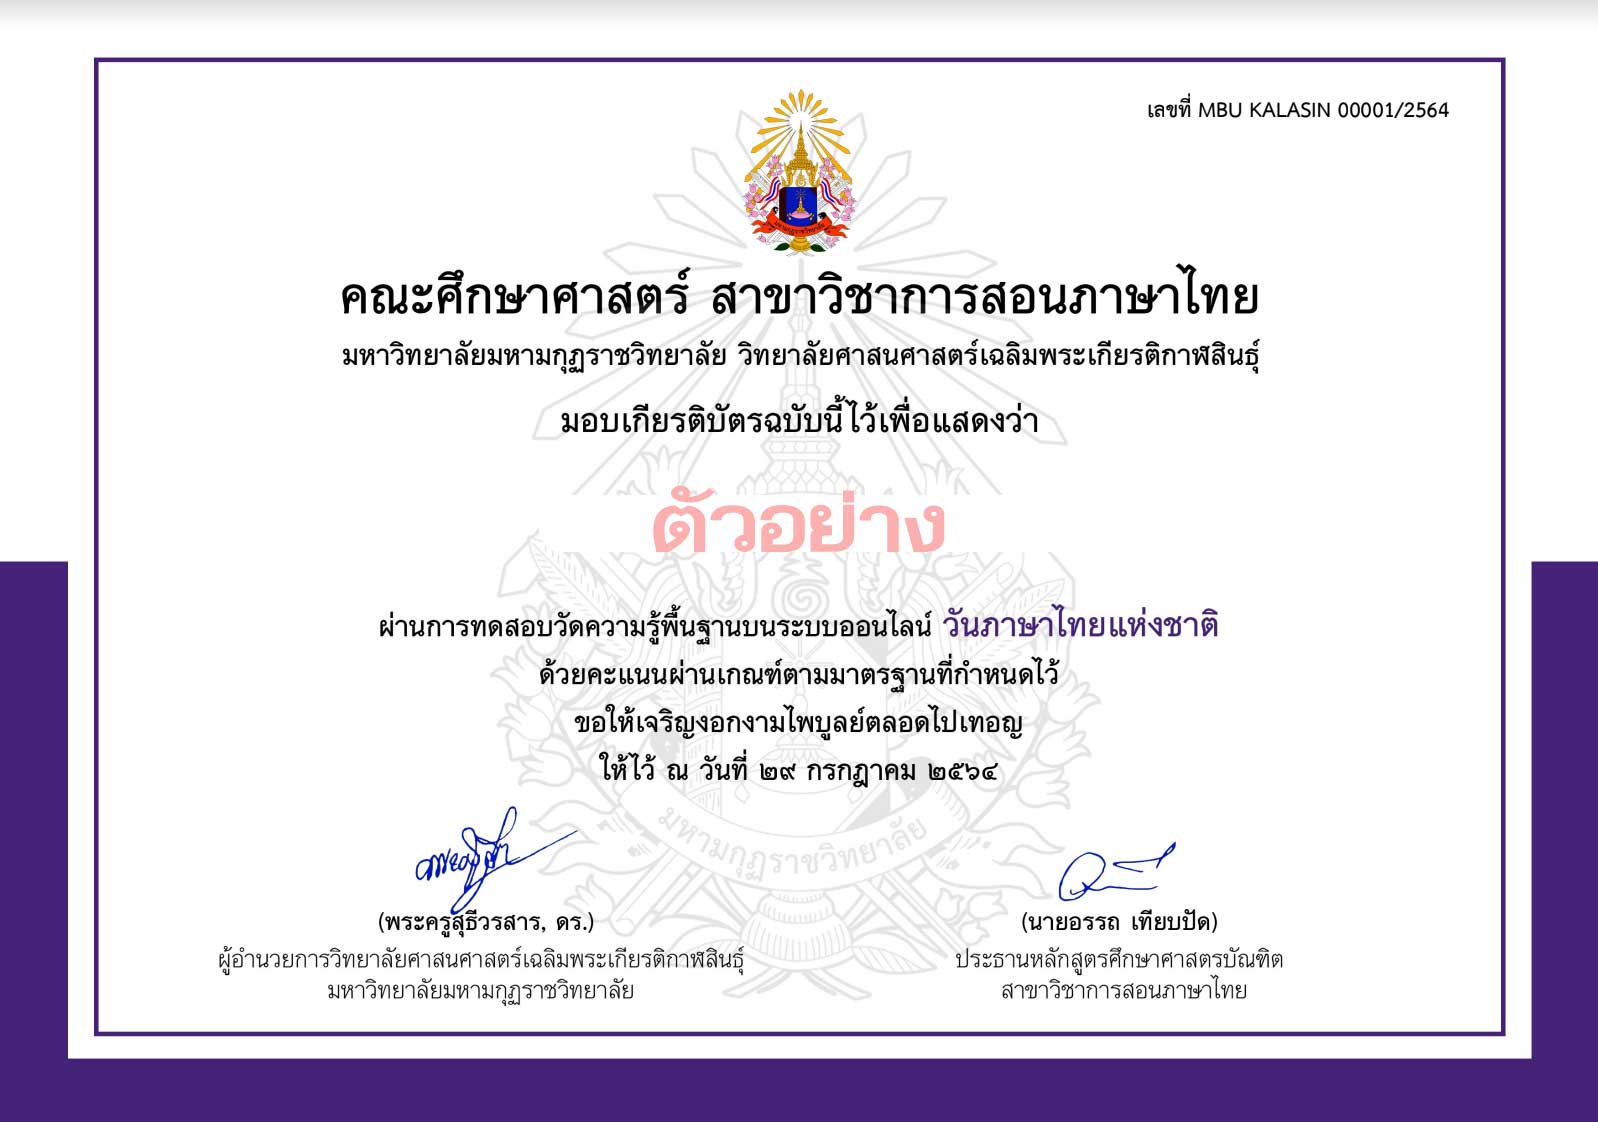 แบบทดสอบออนไลน์ กิจกรรมสัปดาห์ส่งเสริมวันภาษาไทยแห่งชาติ พุทธศักราช 2564 ผ่านเกณฑ์ ดาวน์โหลดเกียรติบัตรในวันถัดไป โดยที่ สาขาวิชาการสอนภาษาไทย คณะศึกษาศาสตร์ MBU Kalasin